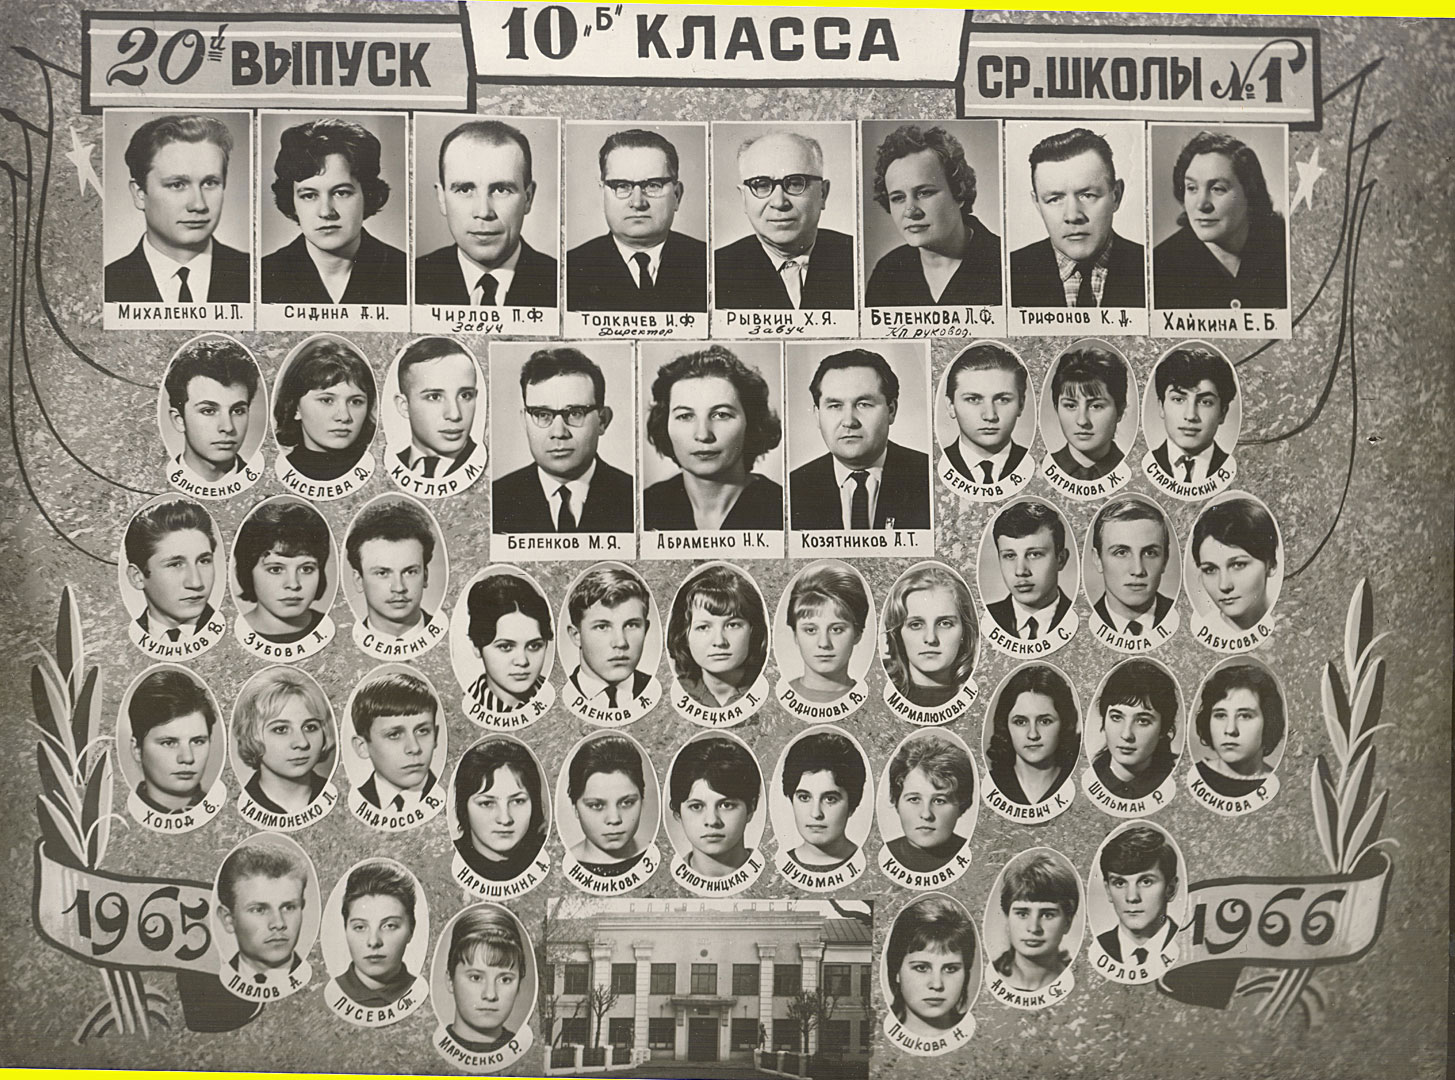 1966-й год: 10-Б класс средней школы № 1, город Жлобин, Гомельская область, Белоруссия